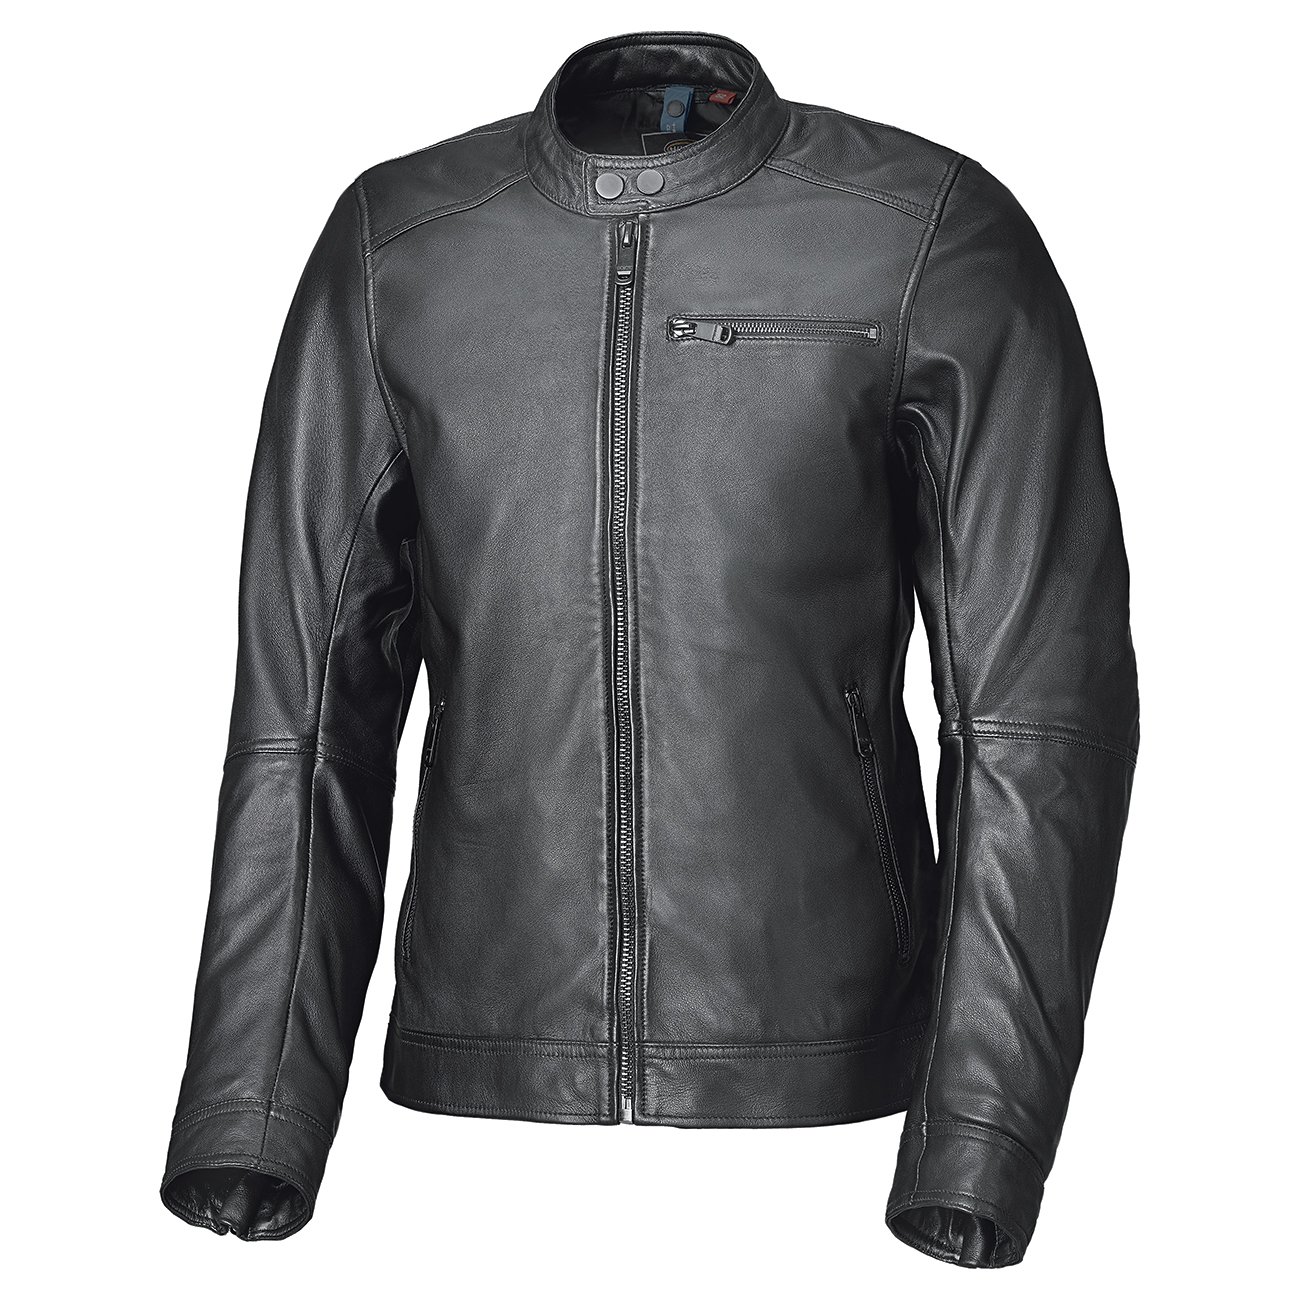 Image of Held Weston Leather Jacket Black Size 50 ID 4049462890930